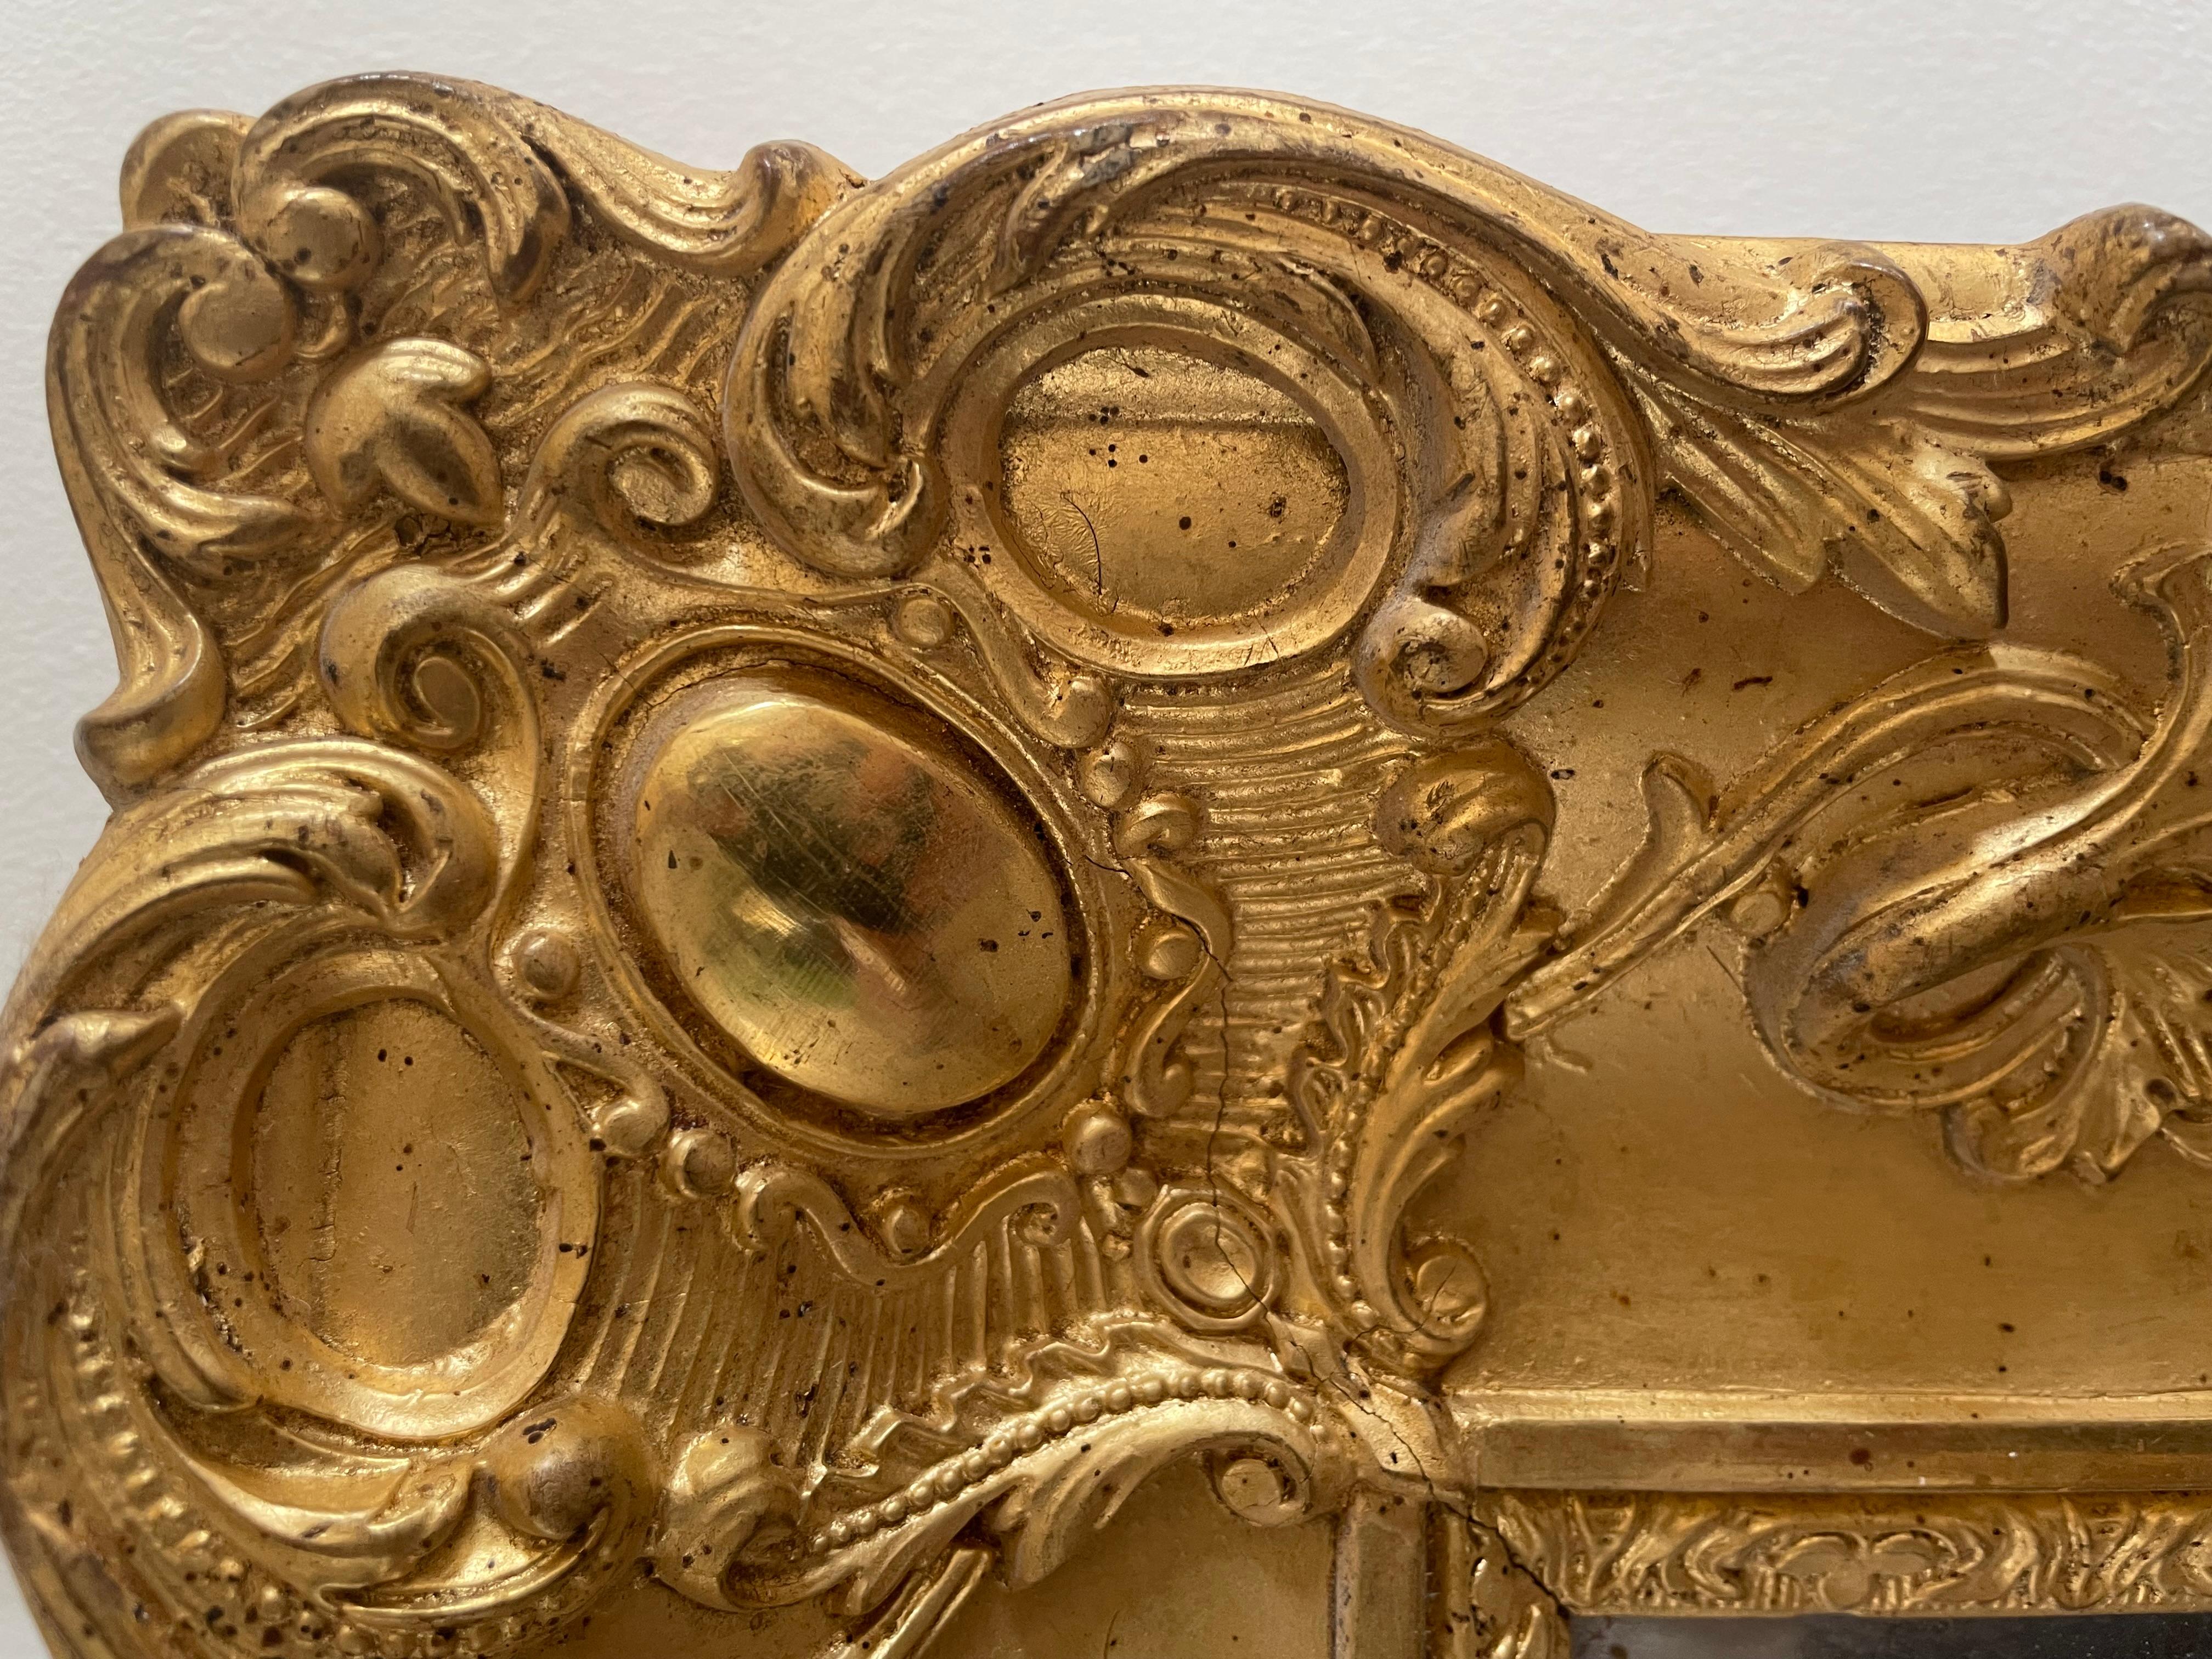 Superbe miroir doré de qualité exceptionnelle, sans aucun manque ni altération, miroir au mercure, très décoratif et élégant, peut être installé à la verticale comme à l'horizontale.